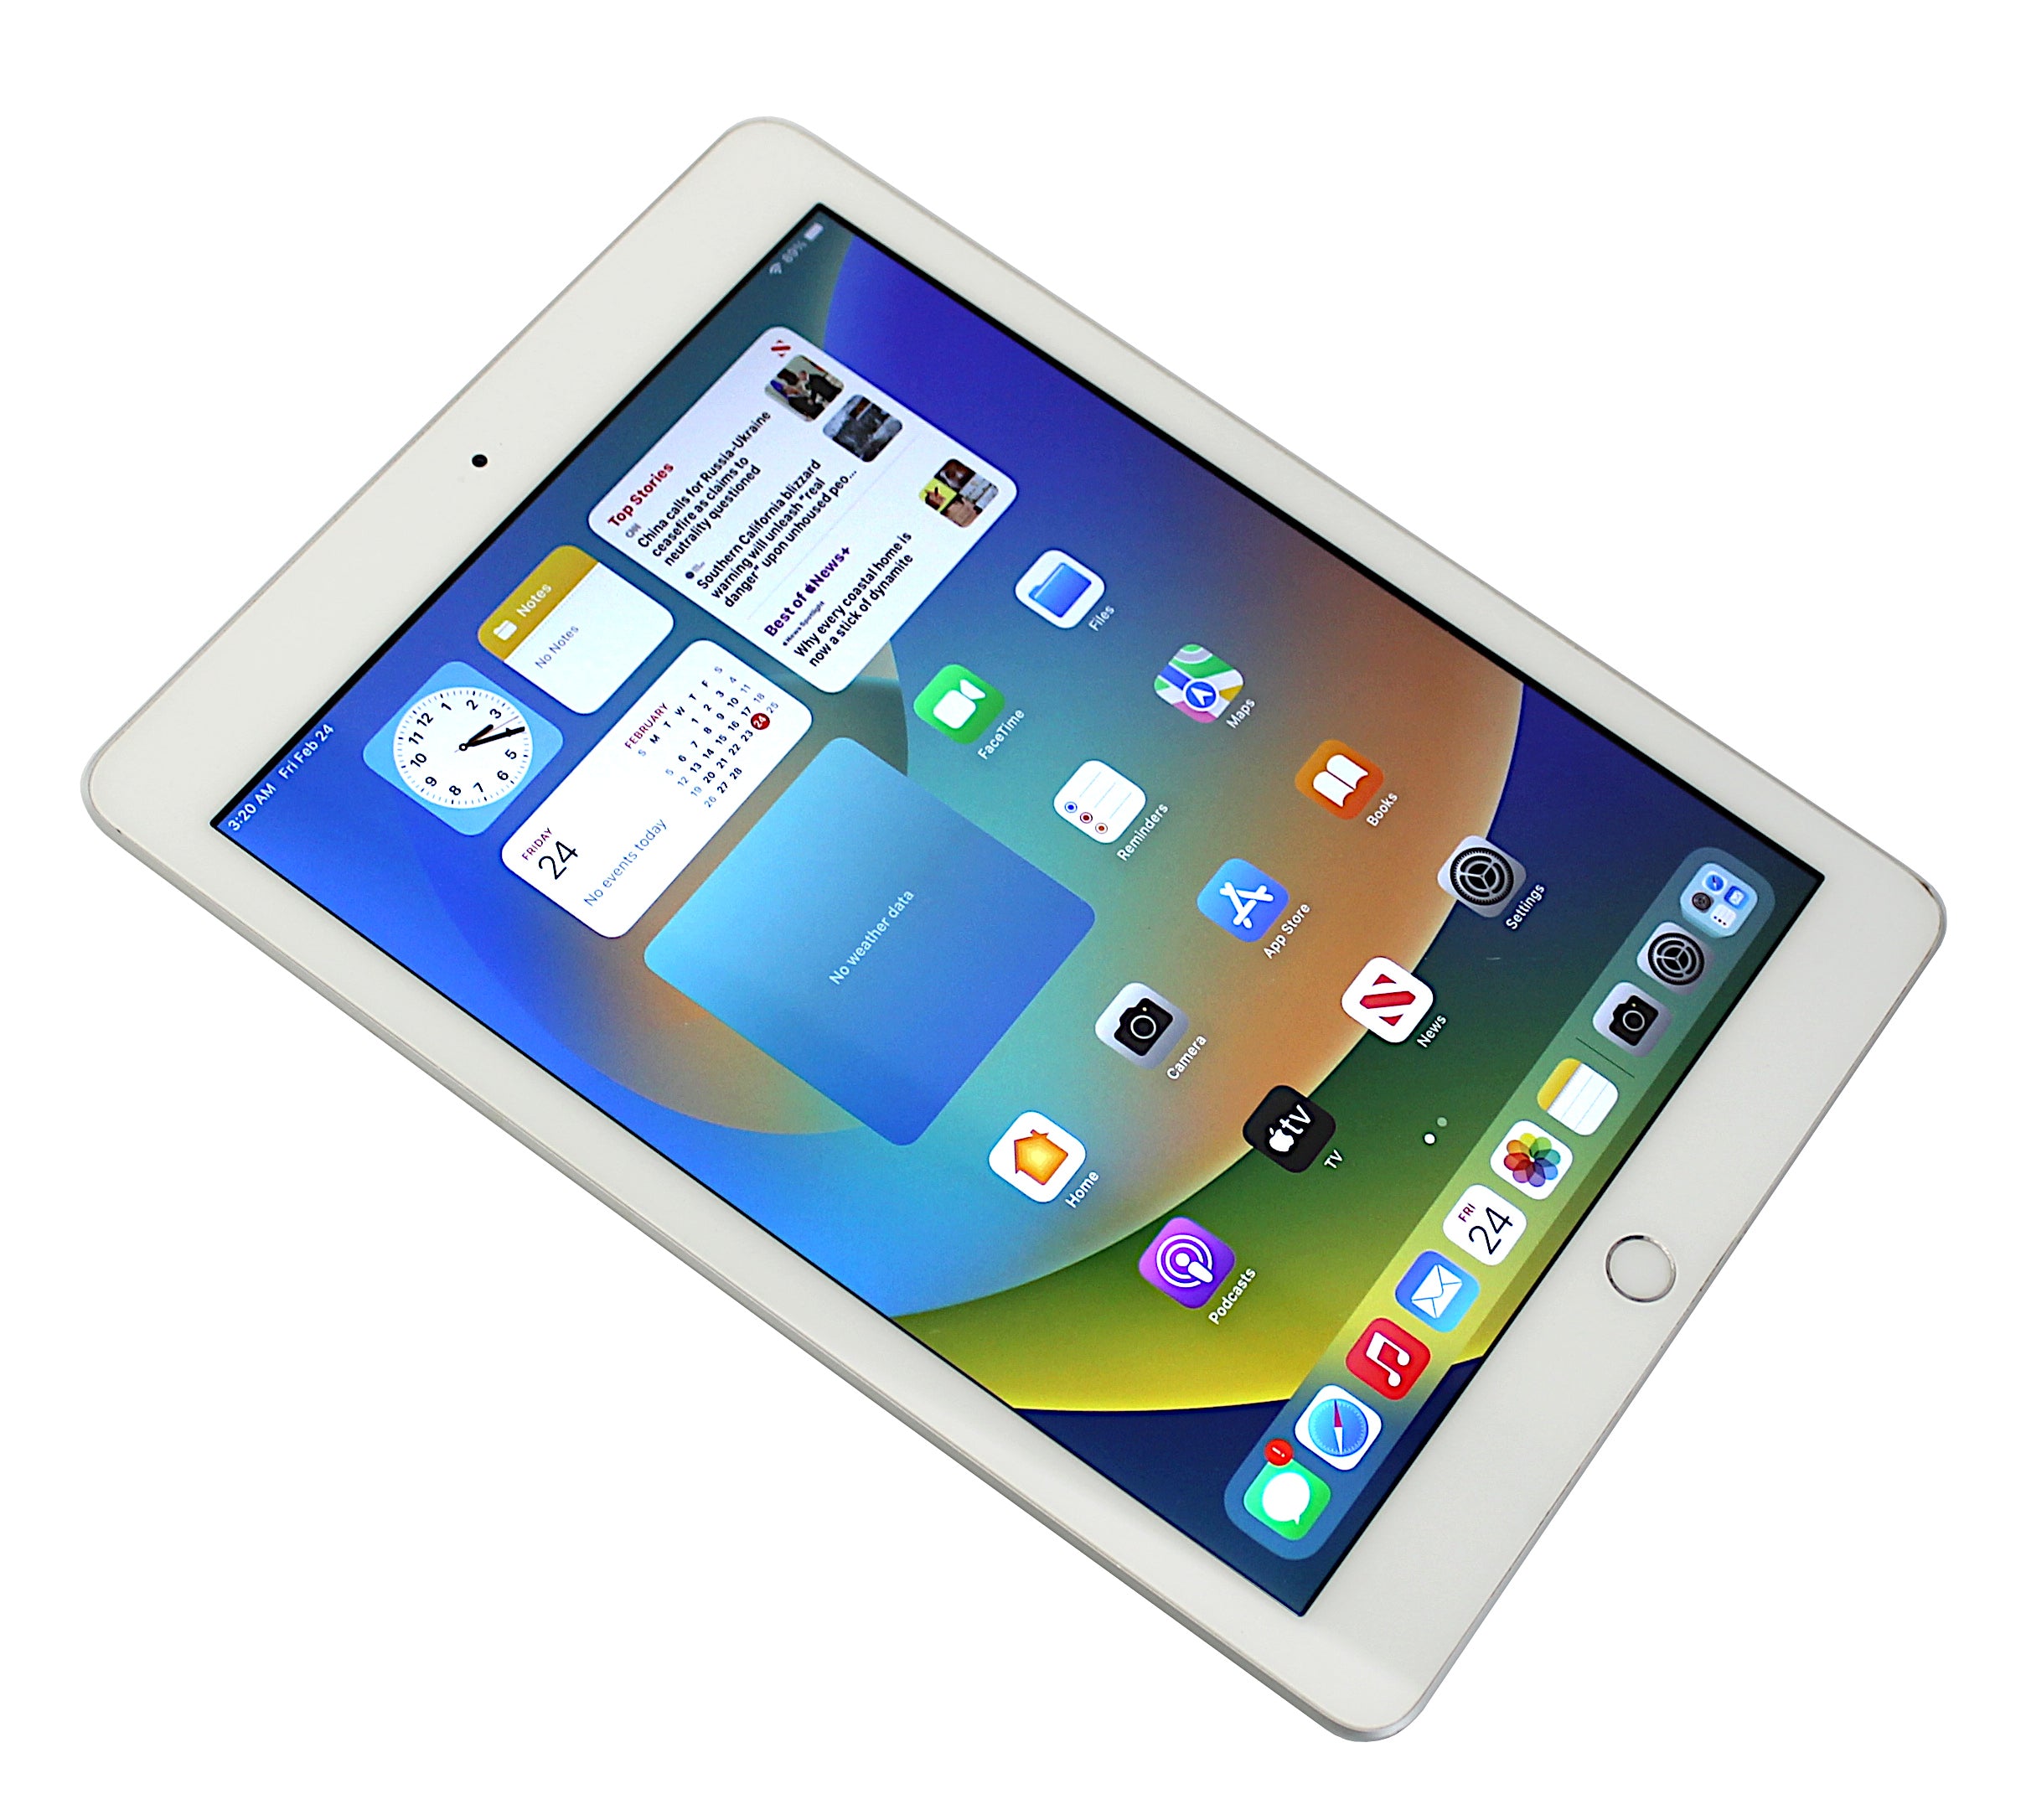 Apple iPad 6th Generation Tablet, 32GB, Wi-Fi, Silver, A1893